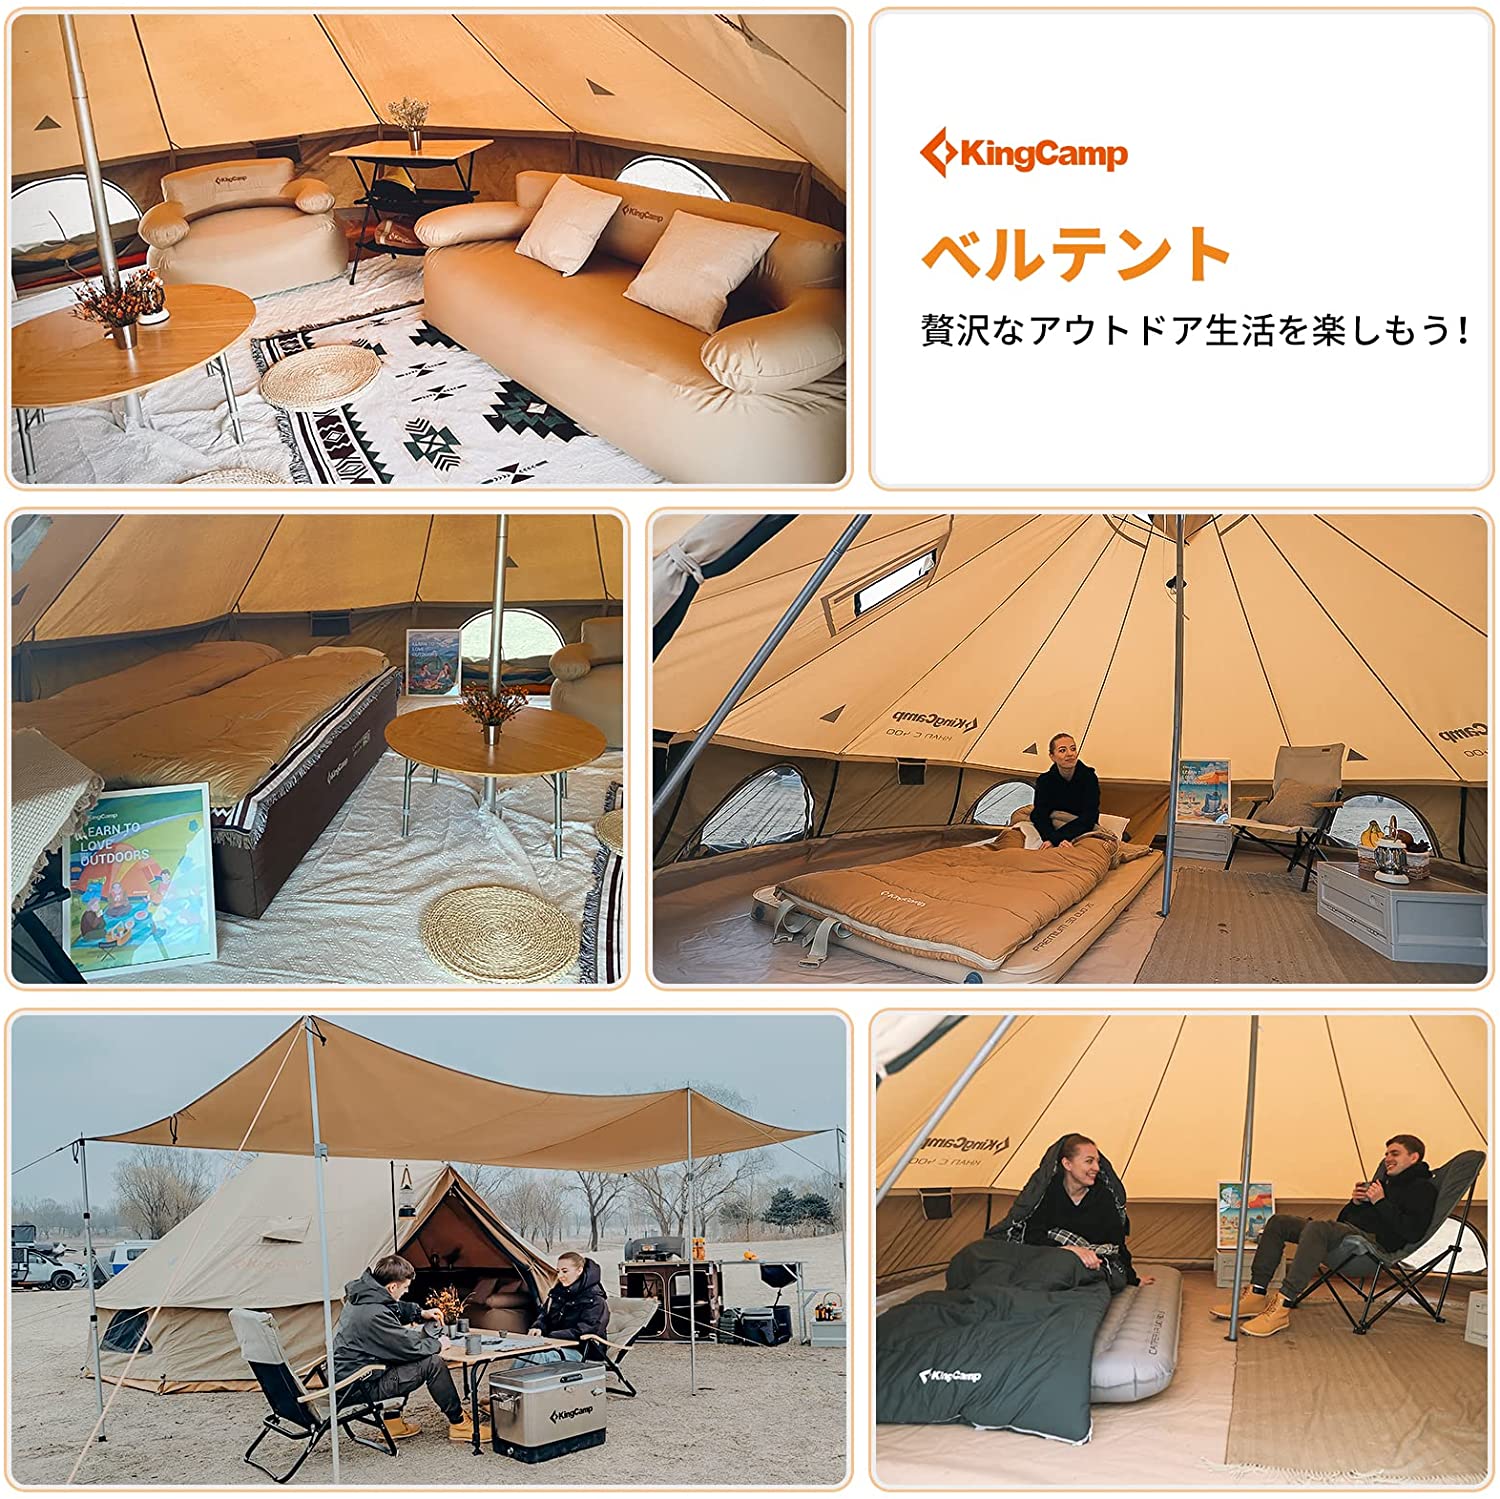 KingCamp ベルテント 4シーズンテント 軽量化 大型 テント 虫よけ対策 